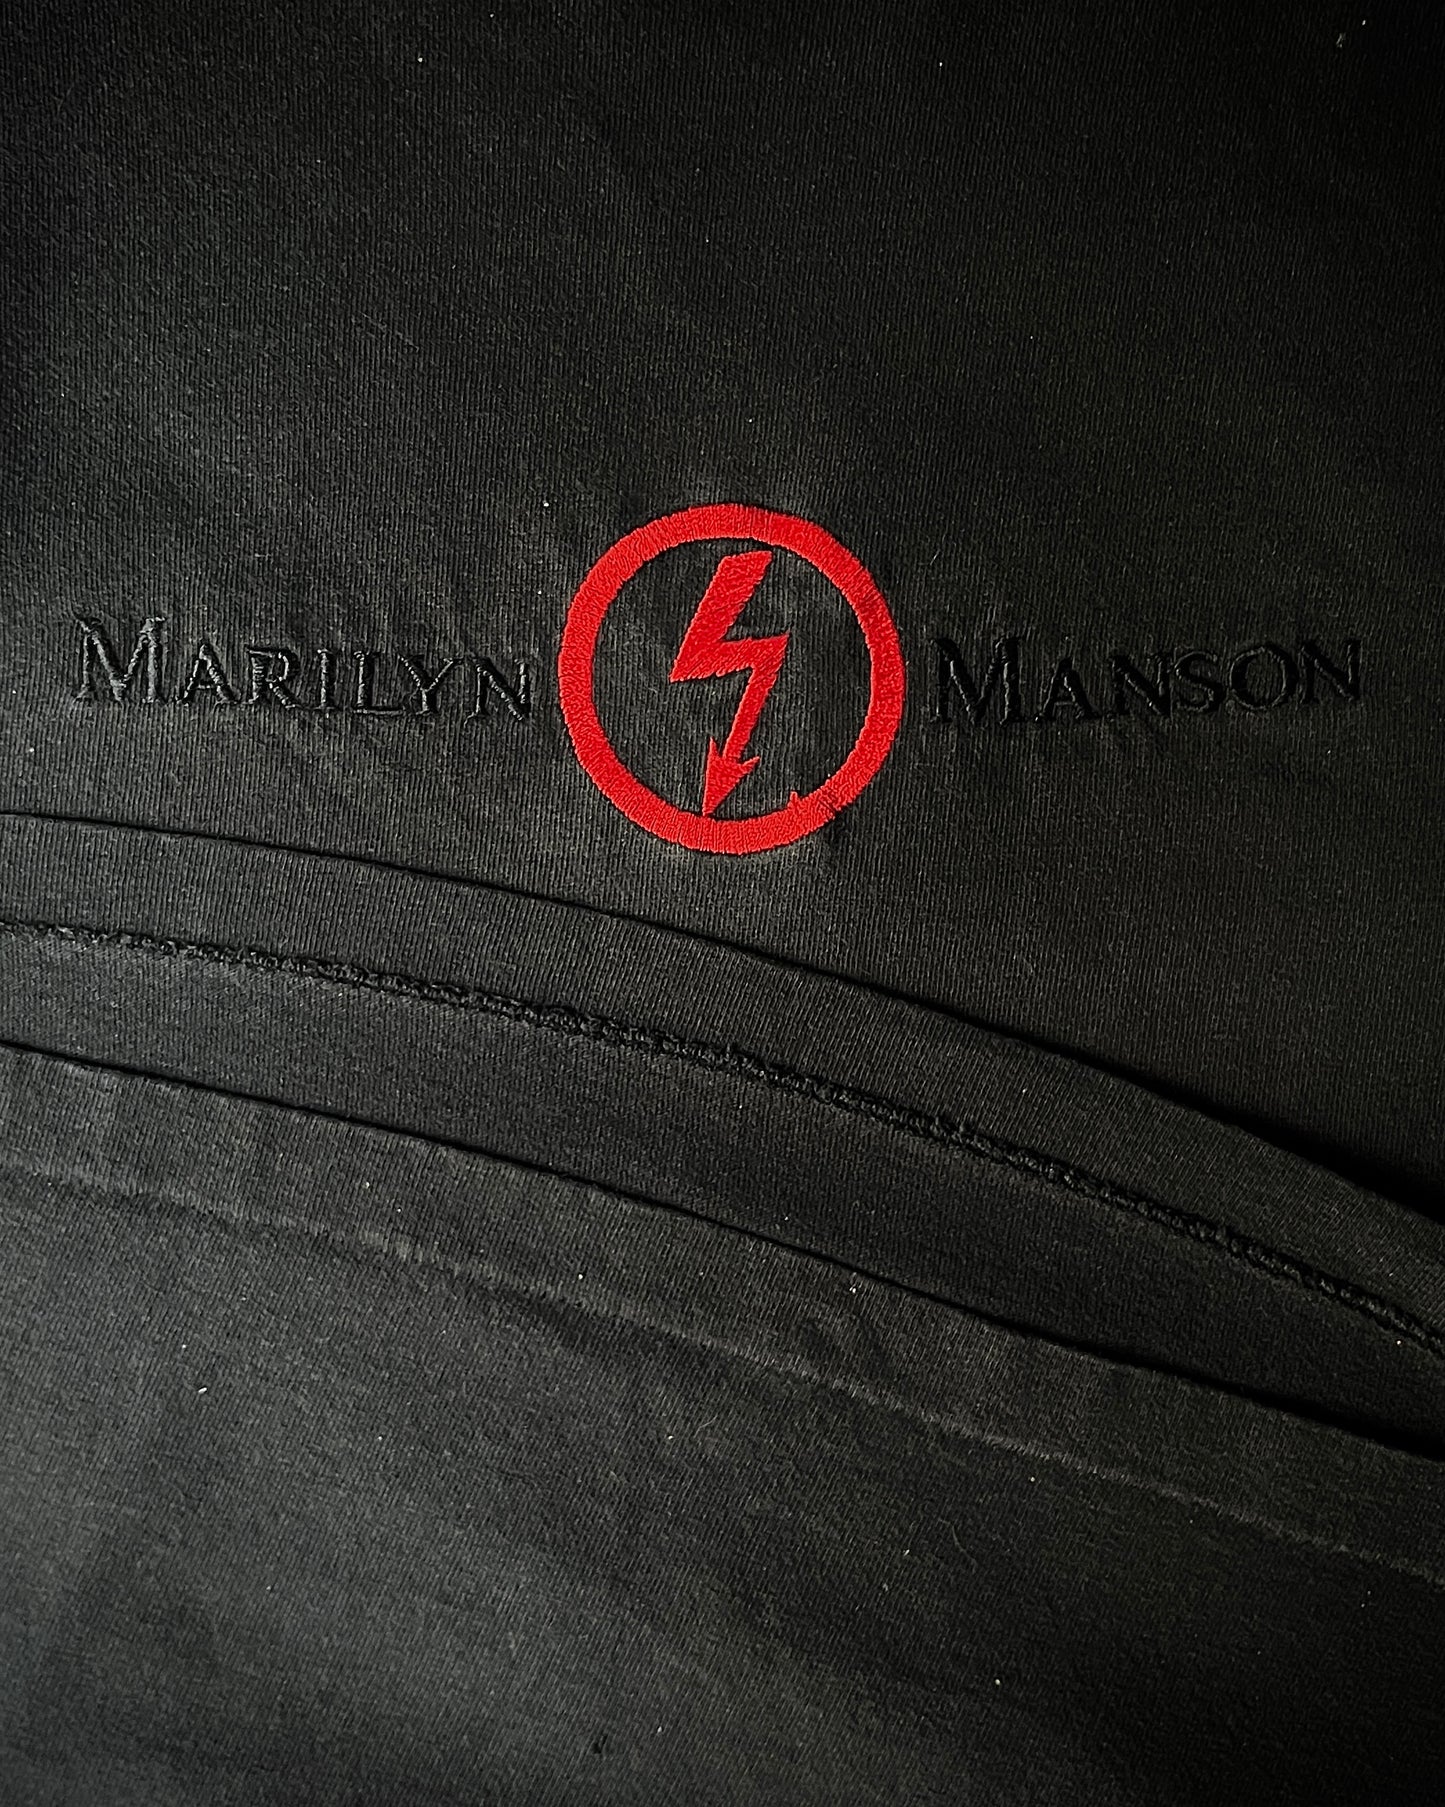 1990's Marilyn Manson Longsleeve